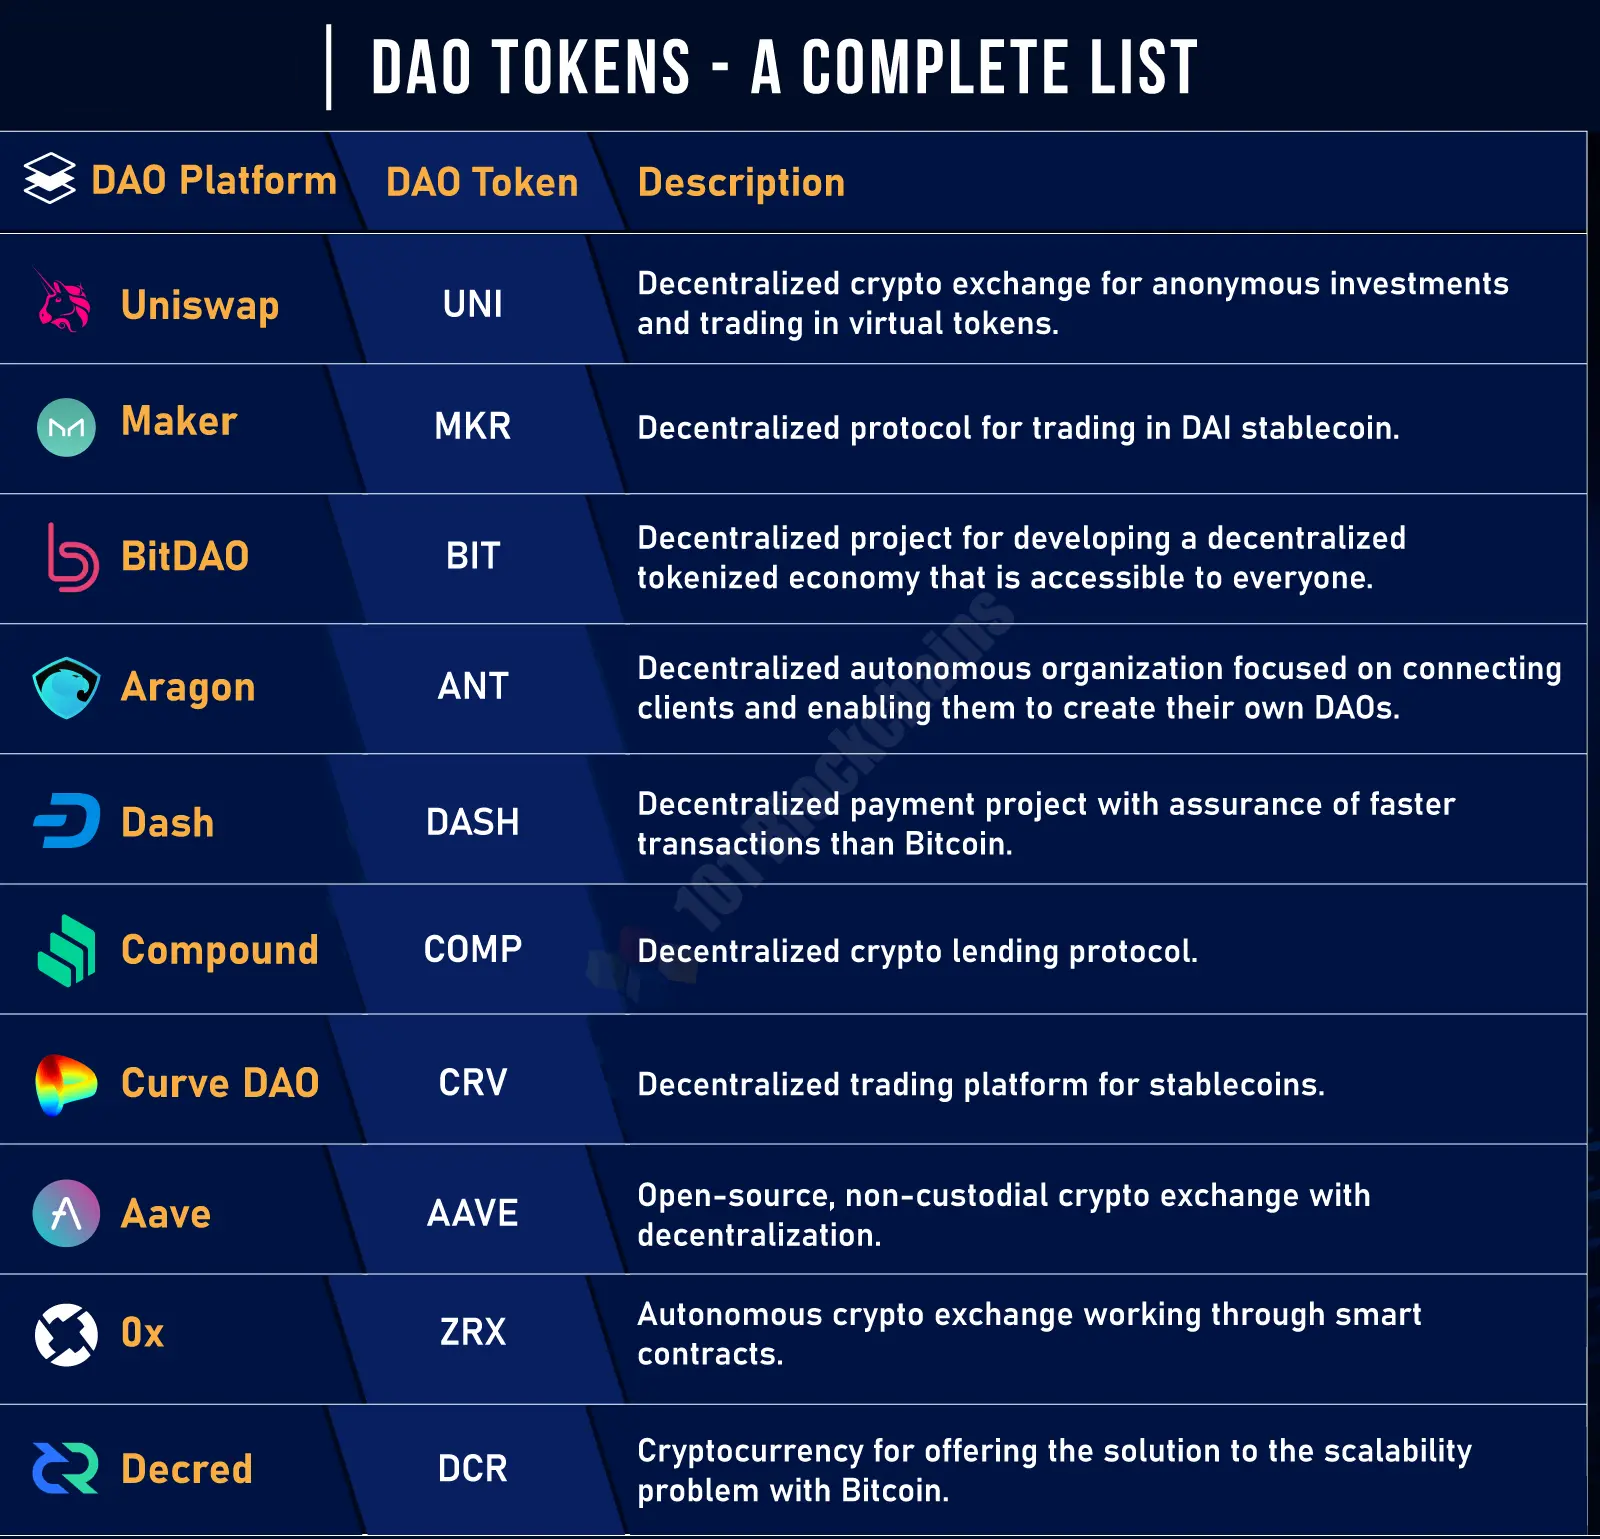 Danh sách các đồng coin hệ DAO tiềm năng nhất